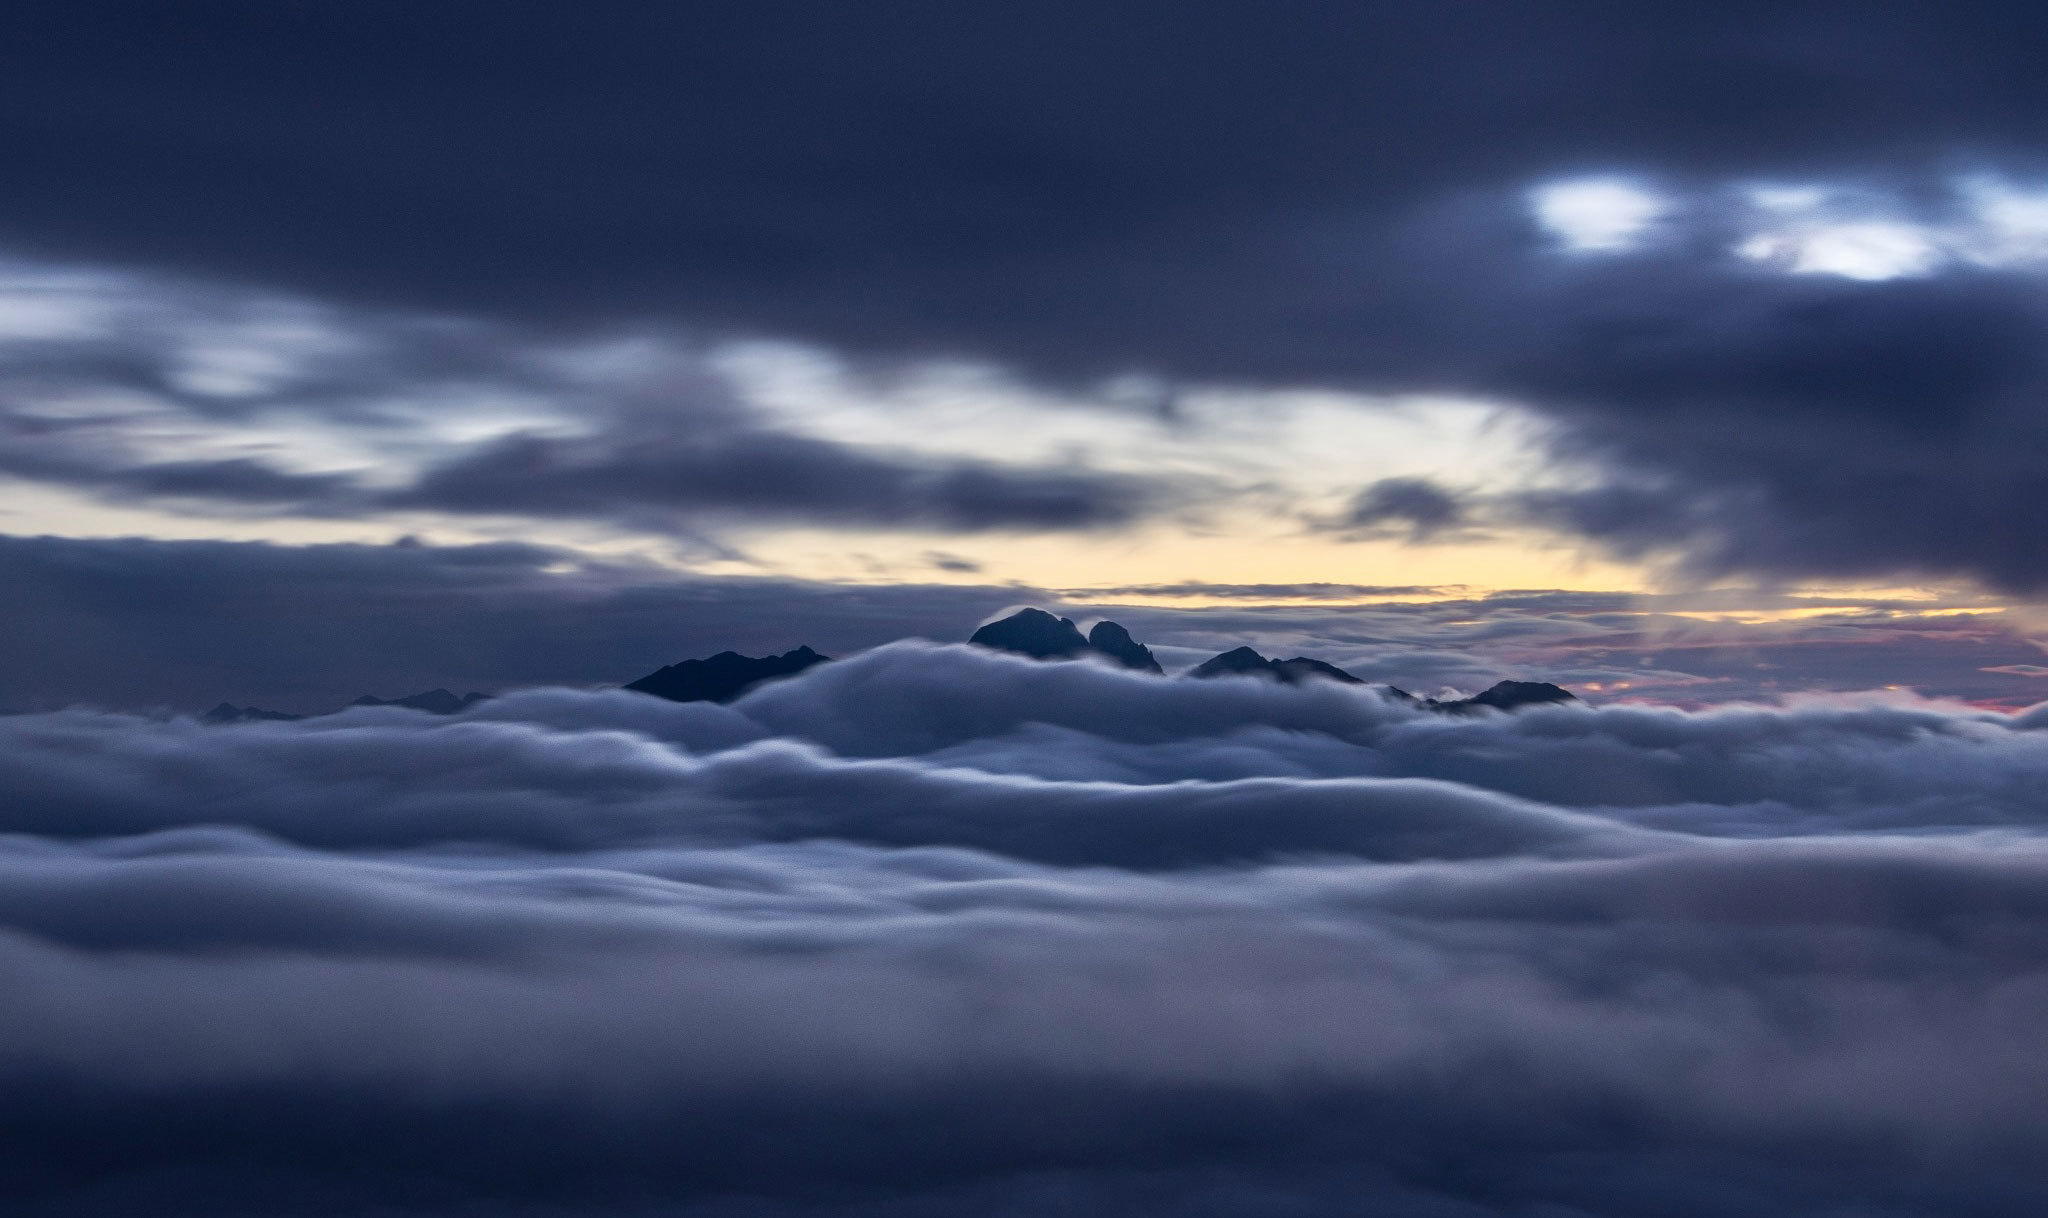 Zoom máy ảnh chụp biển mây trên đỉnh núi Lảo Thẩn